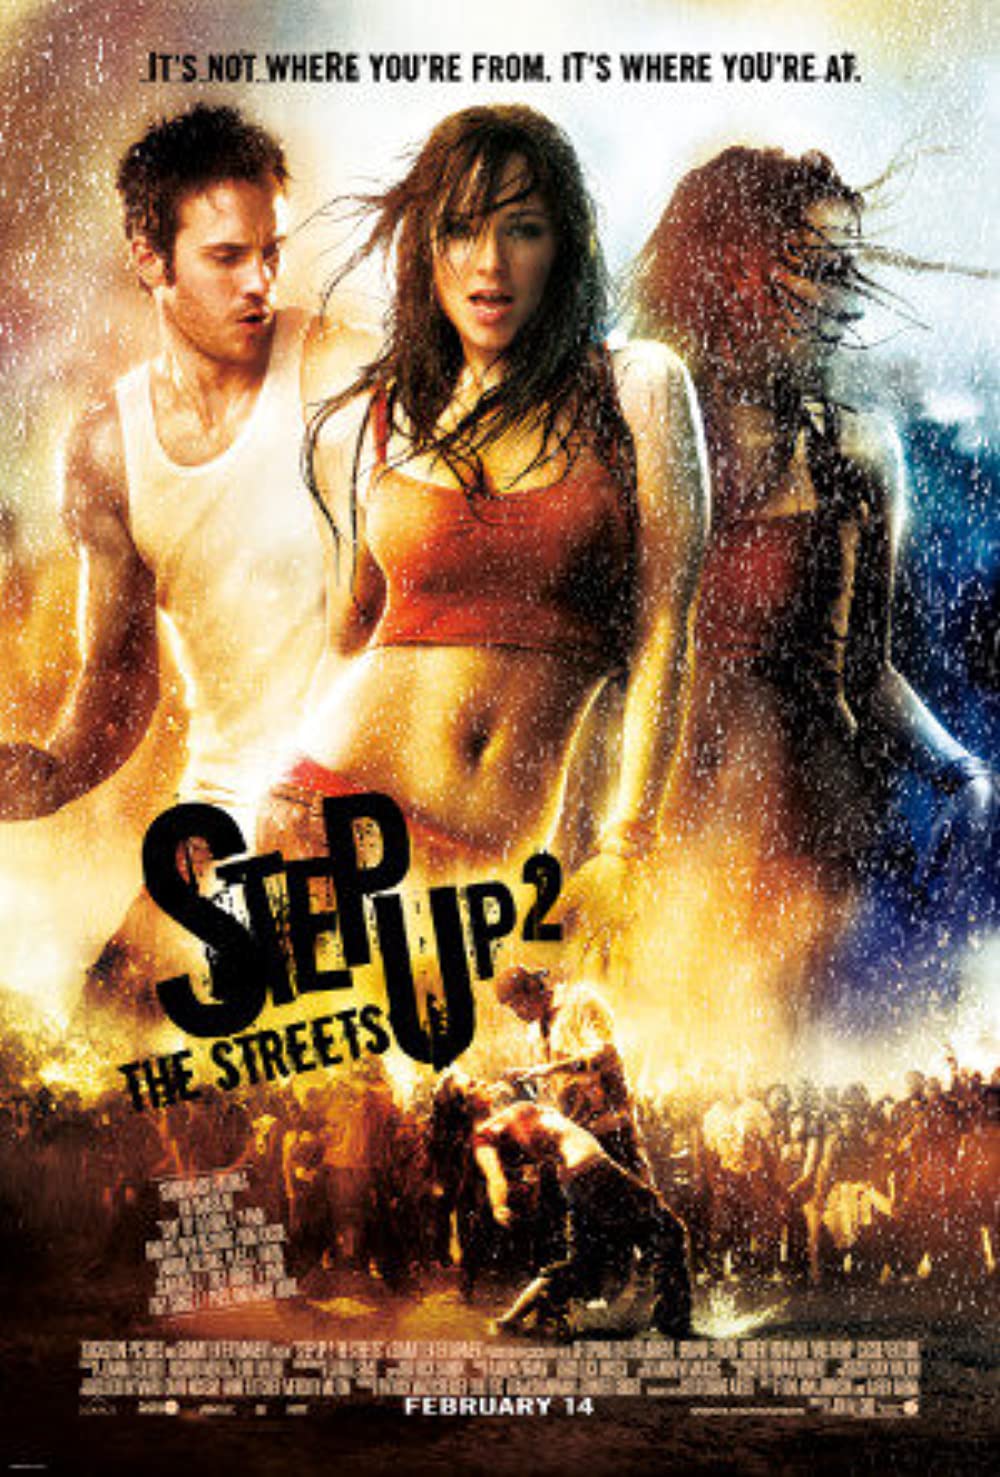 Filmbeschreibung zu Step Up 2: The Streets